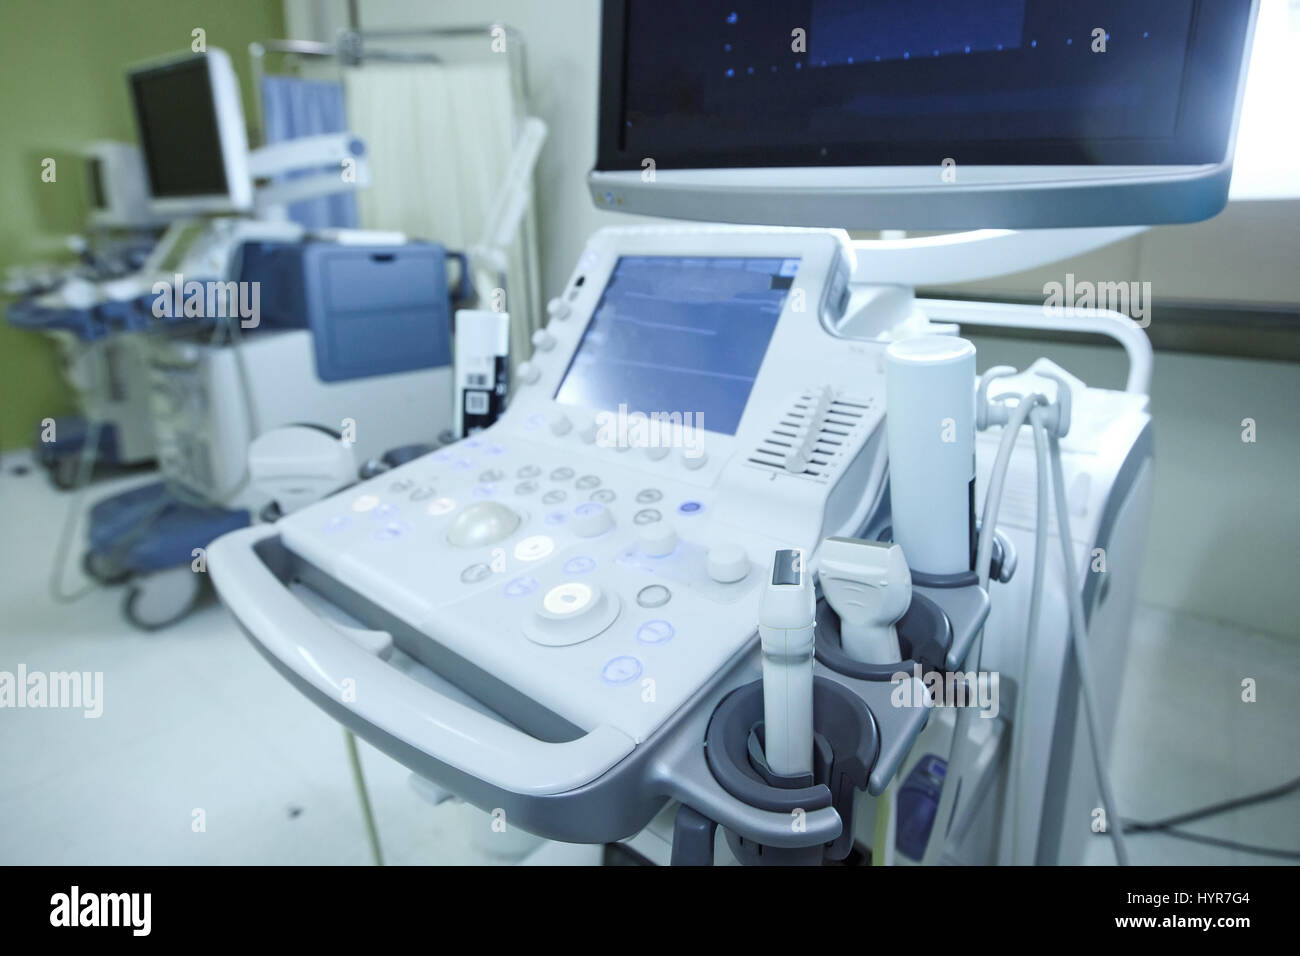 Medizinische Ultraschallgerät mit linearen Sonden in einem diagnostischen Krankenzimmer. Moderne Medizintechnik, vorbeugende Medizin und Gesundheitswesen-Konzept. Stockfoto